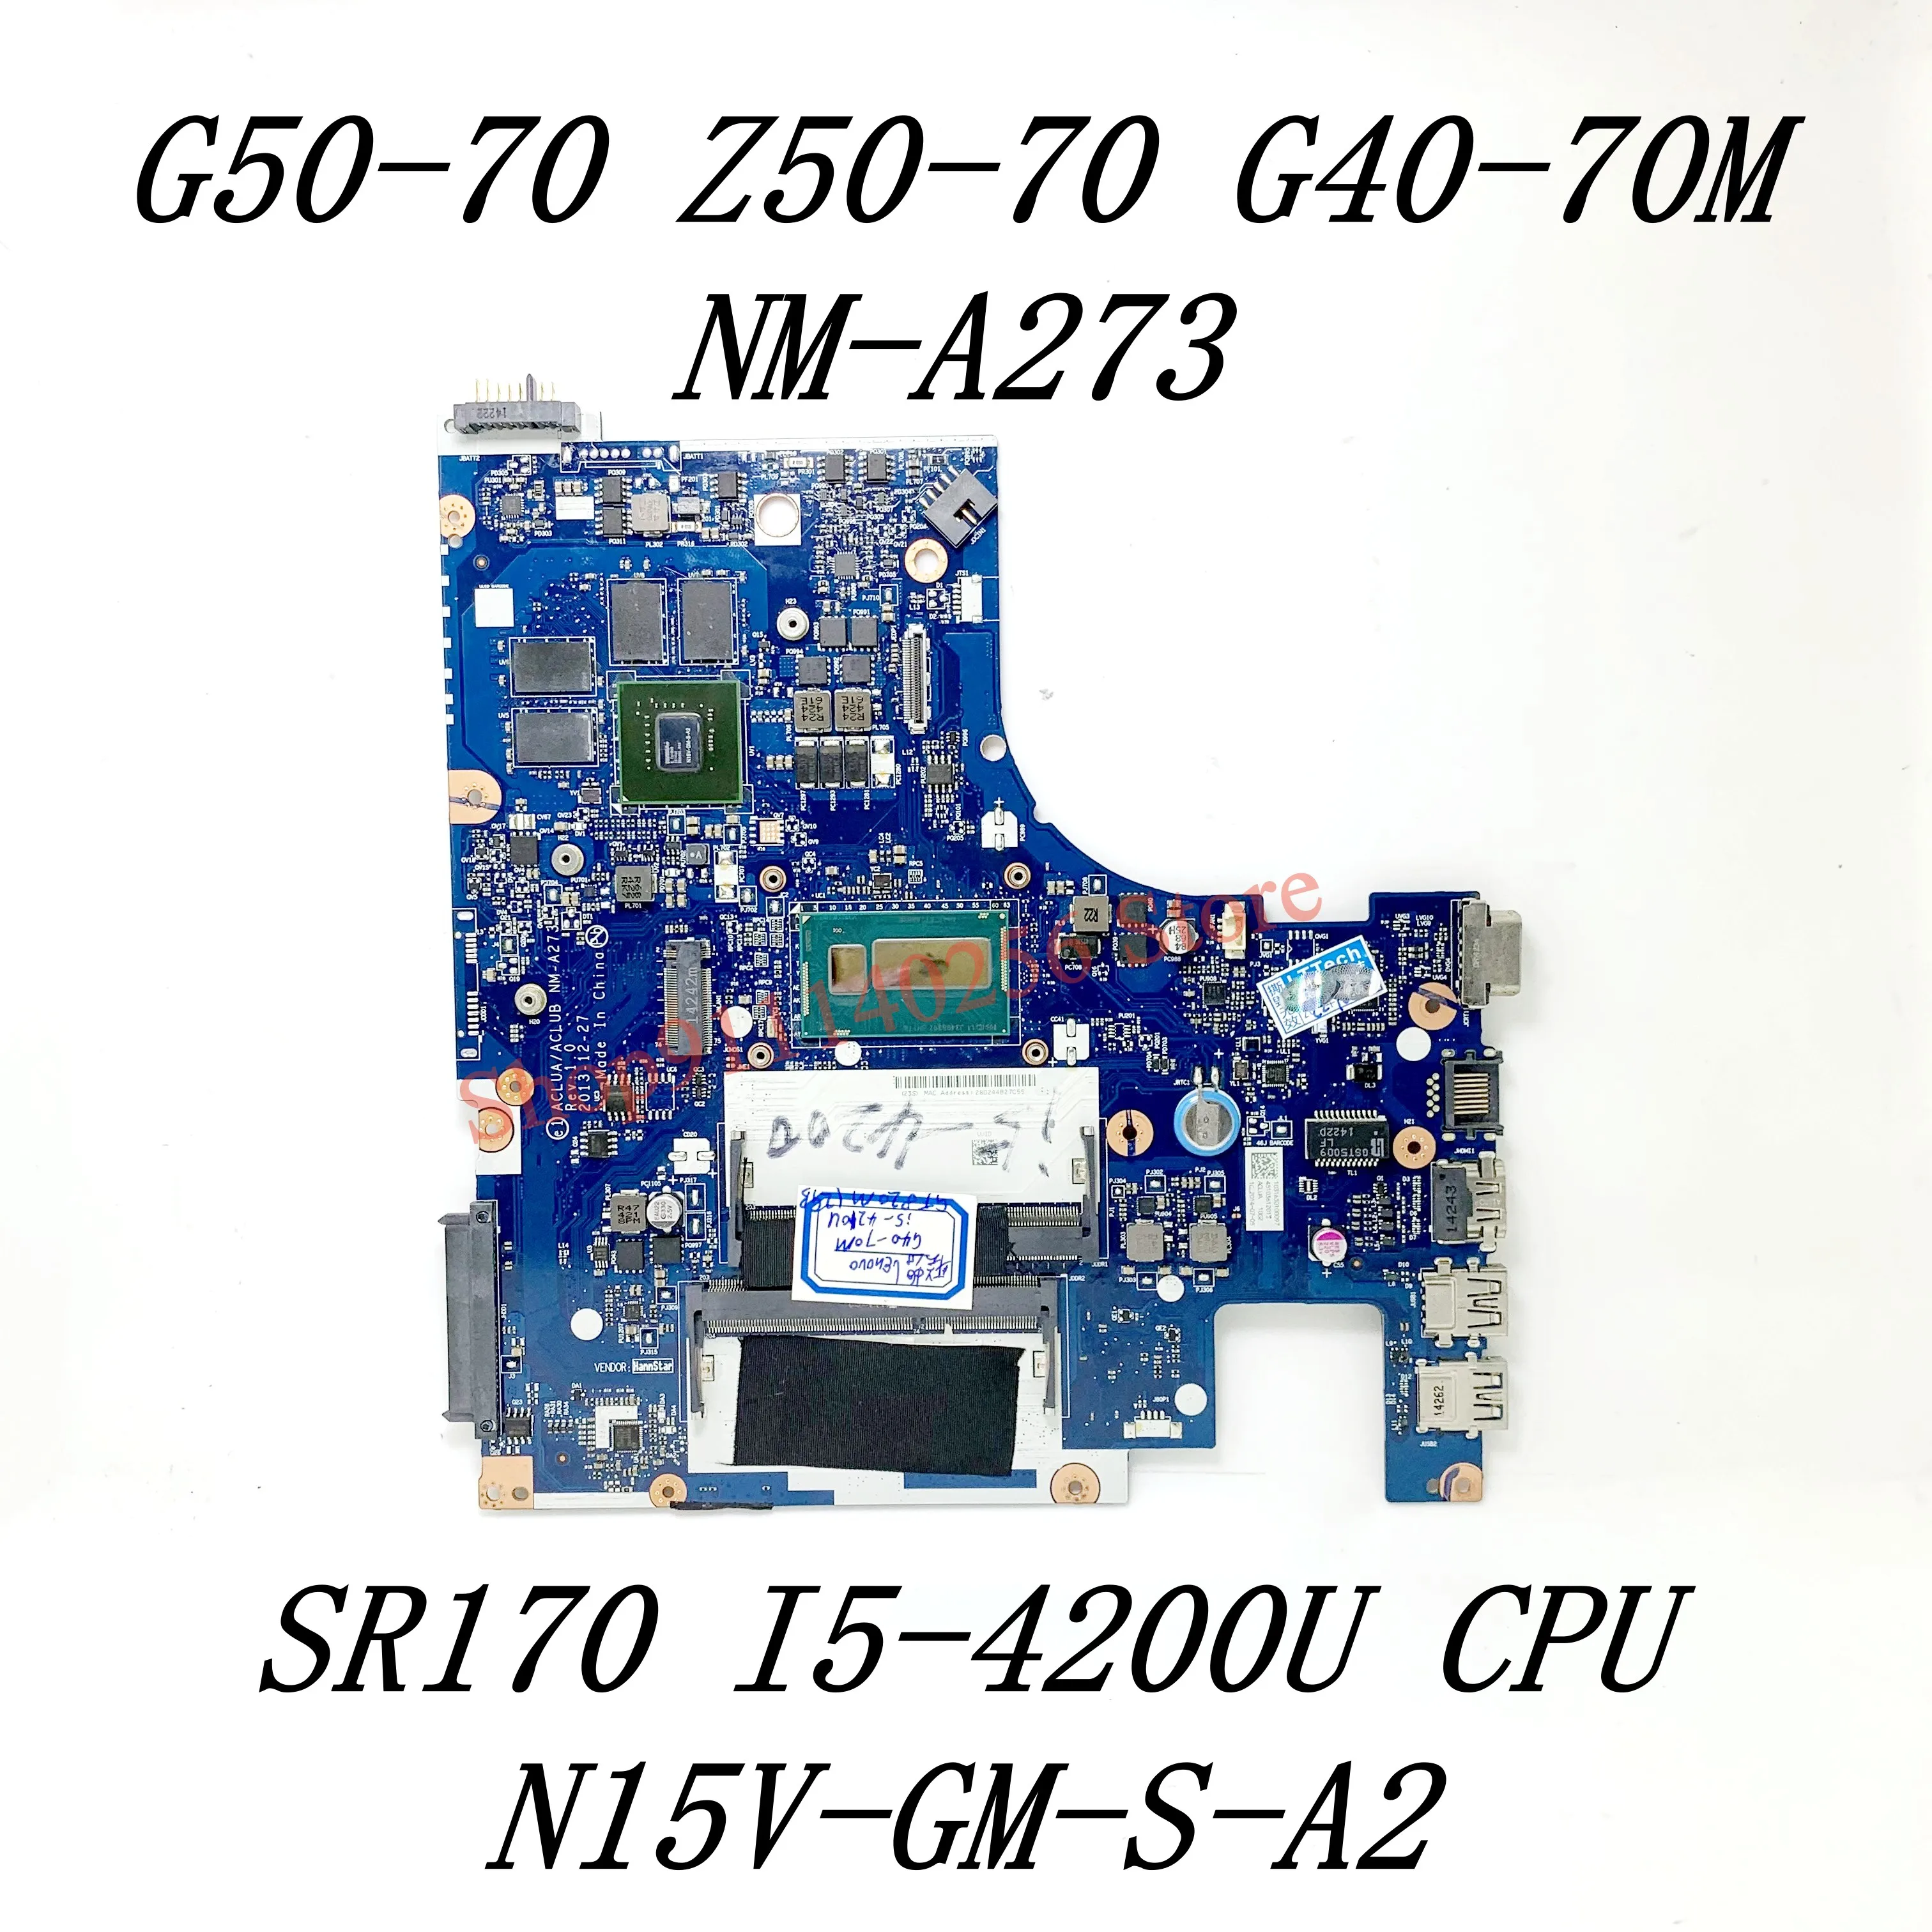 ACLUA/ACLUB NM-A273 S SR170 I5-4200U Procesor N15V-GM-S-A2 Za Lenovo G50-70 Z50-70 G40-70M G50-70M Matična ploča laptopa 100% Testiran